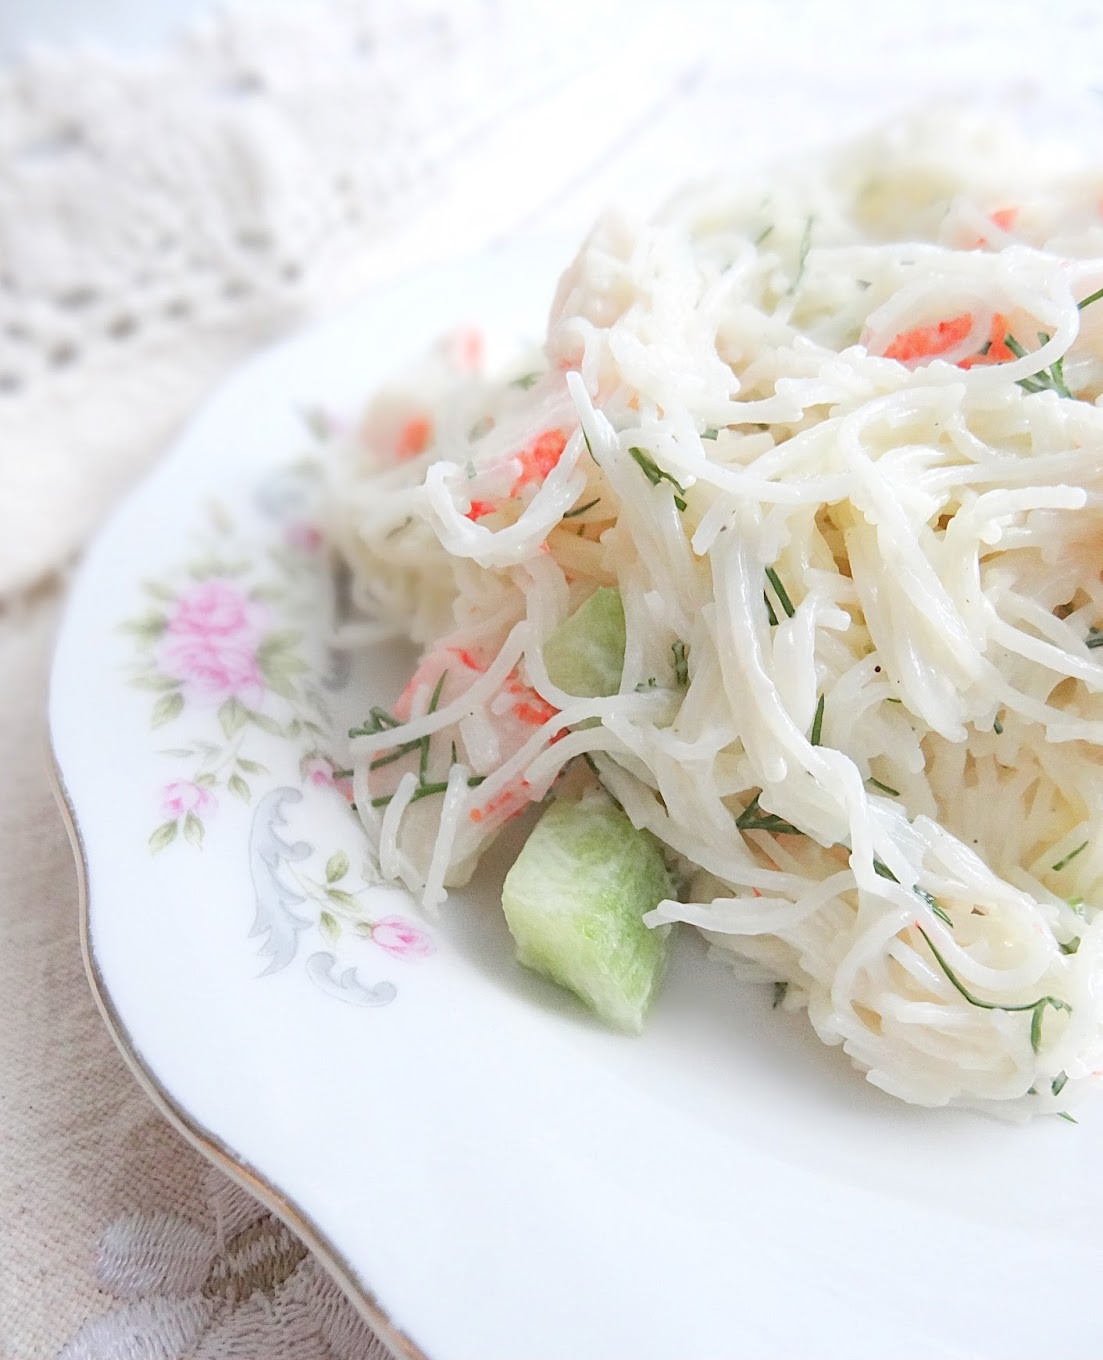 Крабовый салат с рисовой лапшой